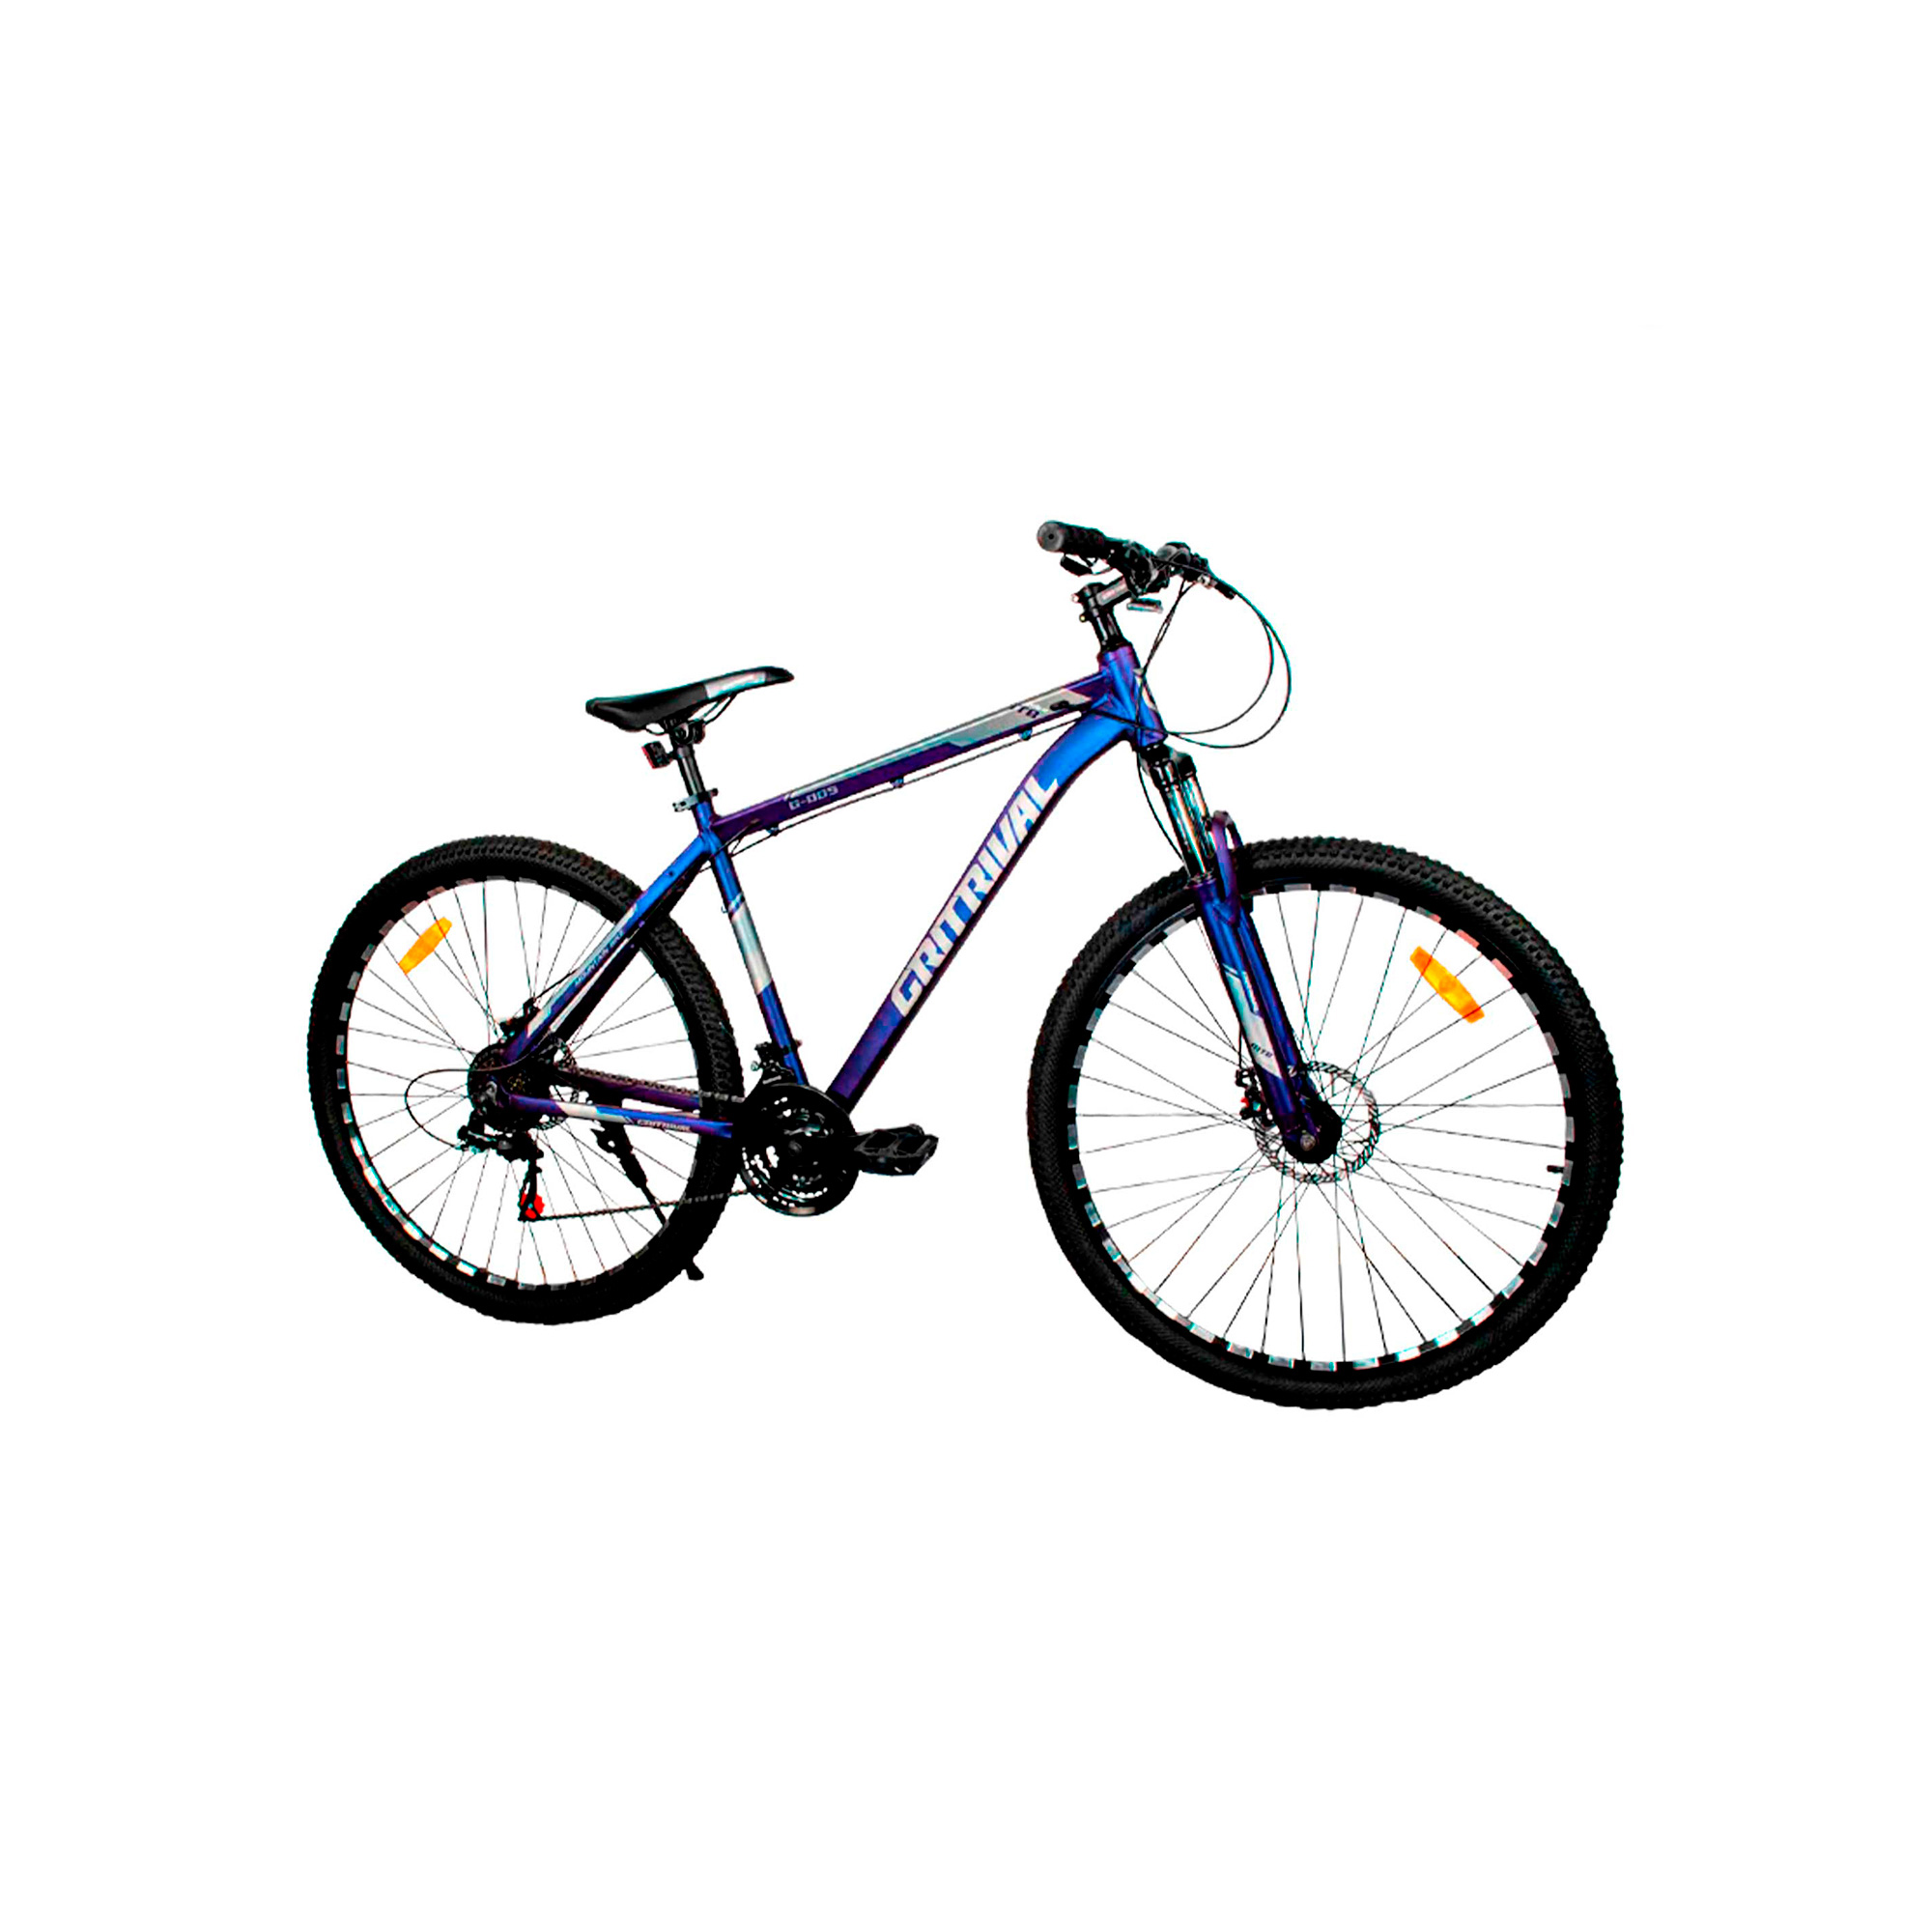 Comprar Bicicletas 24 pulgadas Online - Ciclos Currá